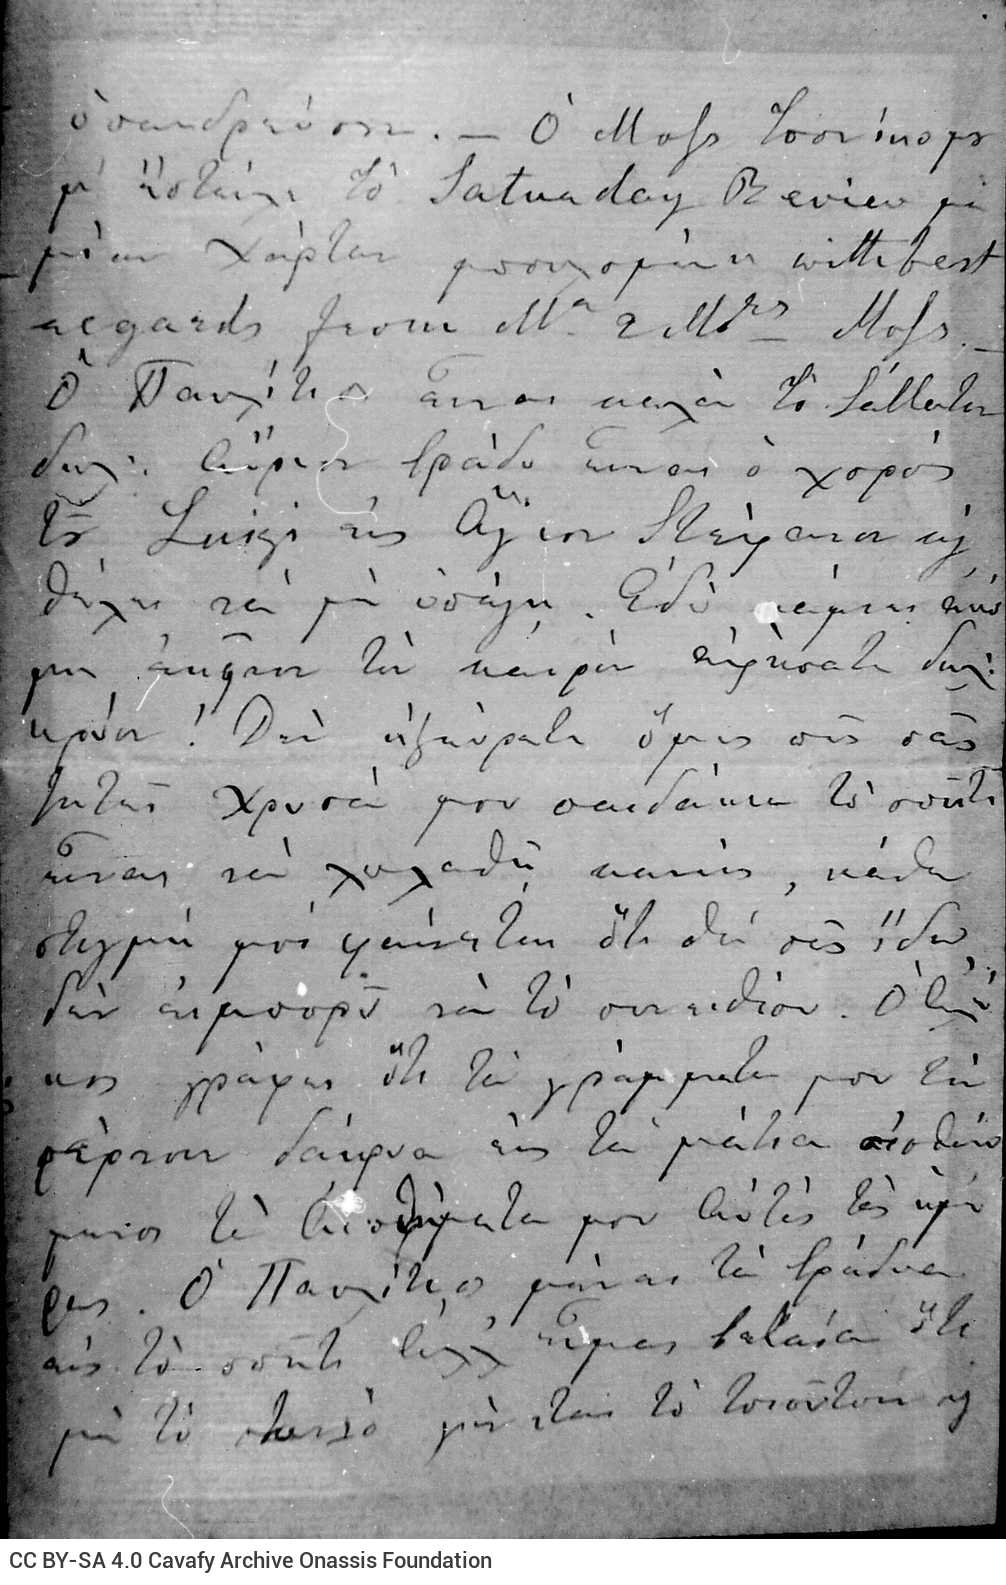 Χειρόγραφη επιστολή της Χαρίκλειας Καβάφη προς τους γιους της Τζω�